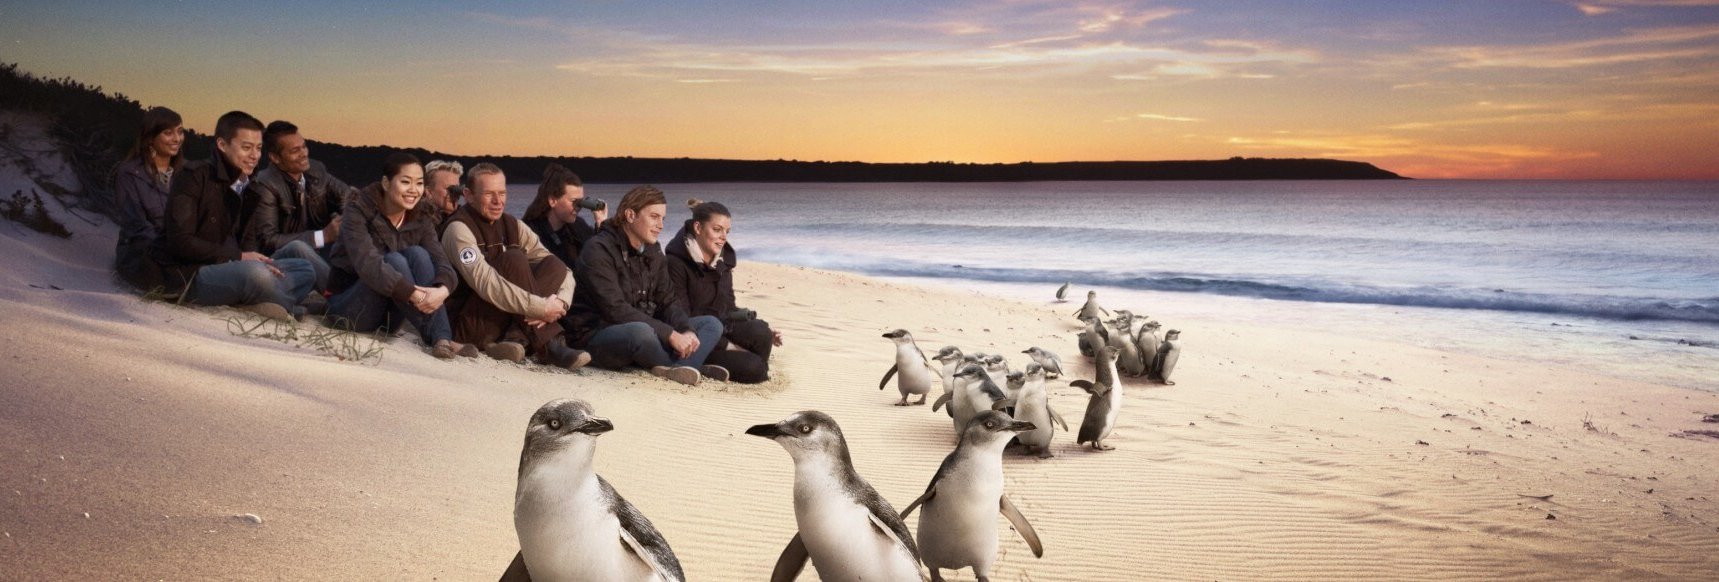 Philip Island Trip - Penguin Parade